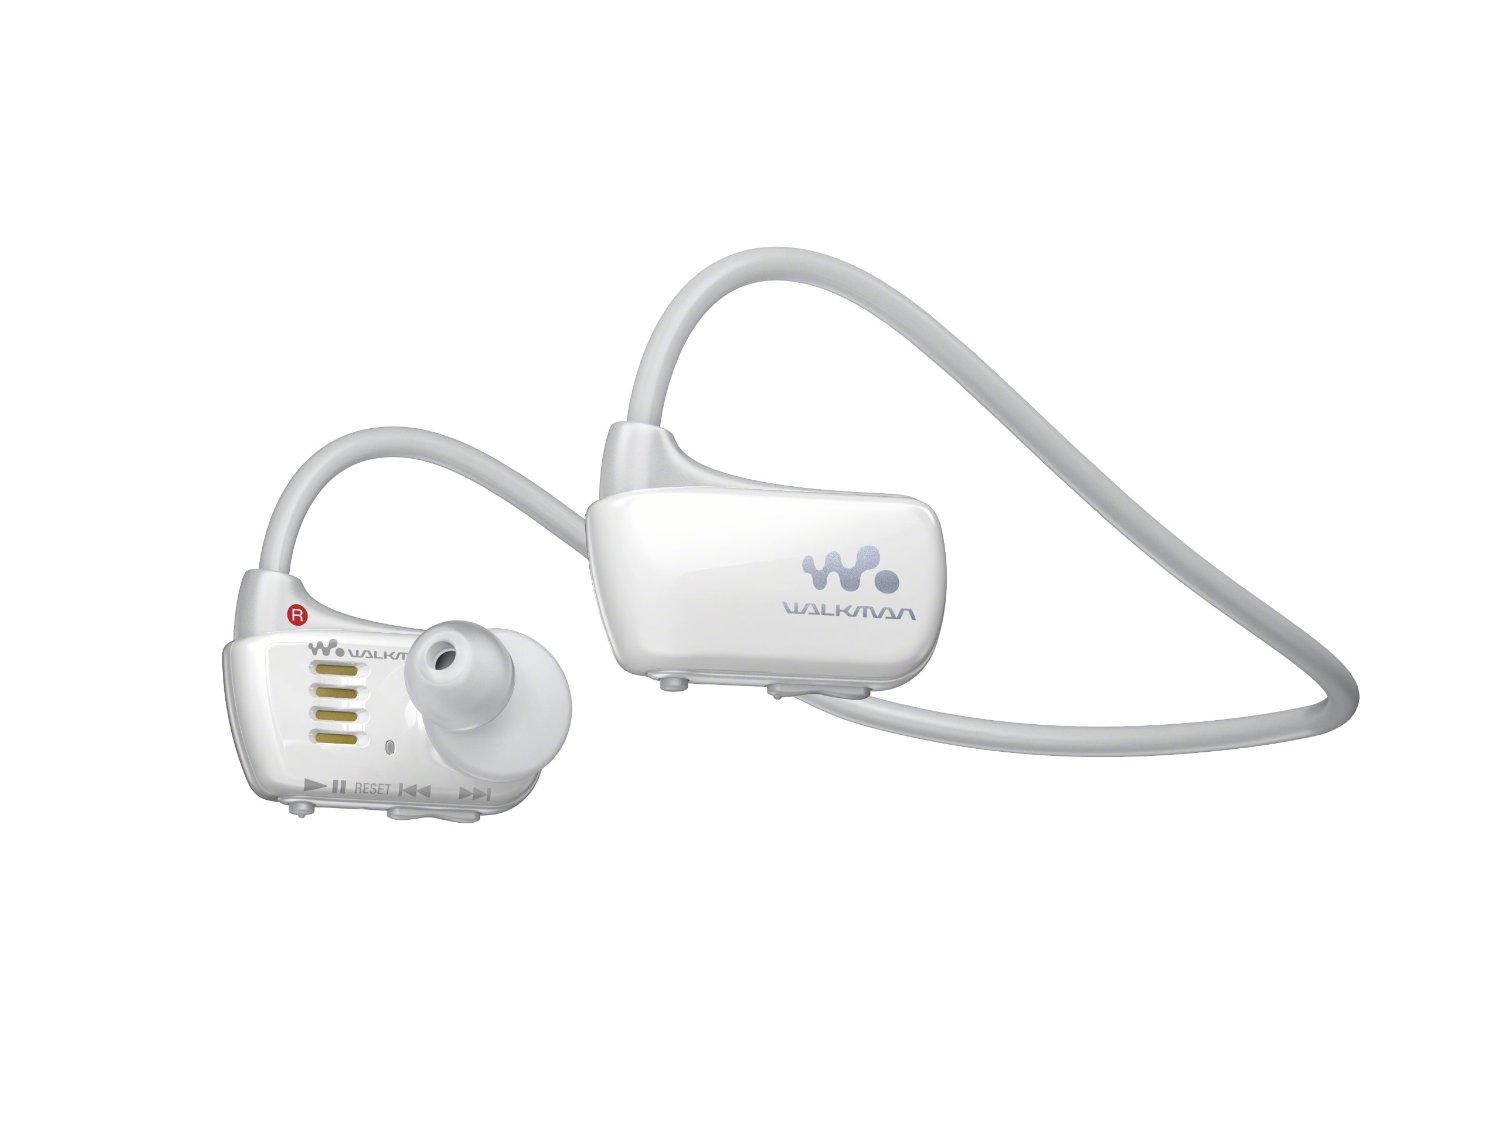 Sony Walkman NWZW273S 4 GB Waterproof Sports MP3 Player (White)